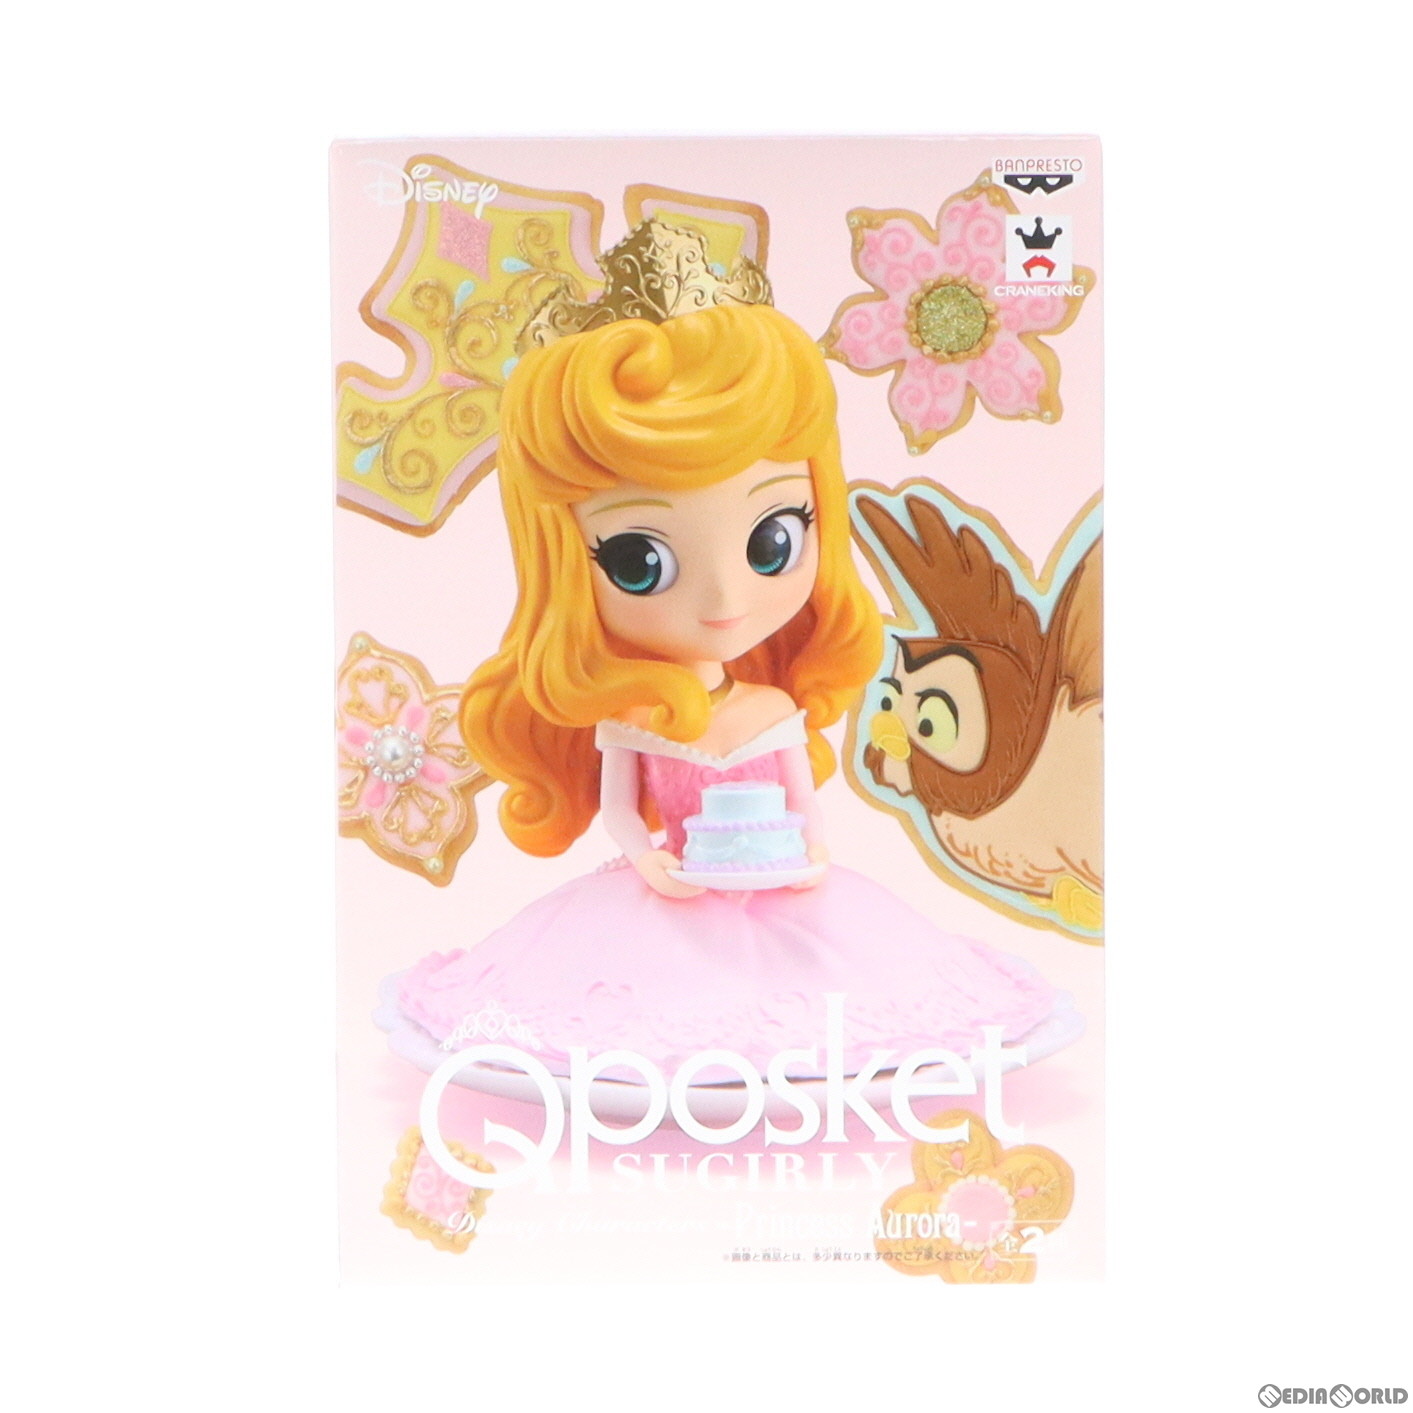 【中古】[FIG]オーロラ姫(B パステルカラーver) 眠れる森の美女 Q posket Disney Characters -Princess Aurora- フィギュア プライズ(39353) バンプレスト(20190531)画像